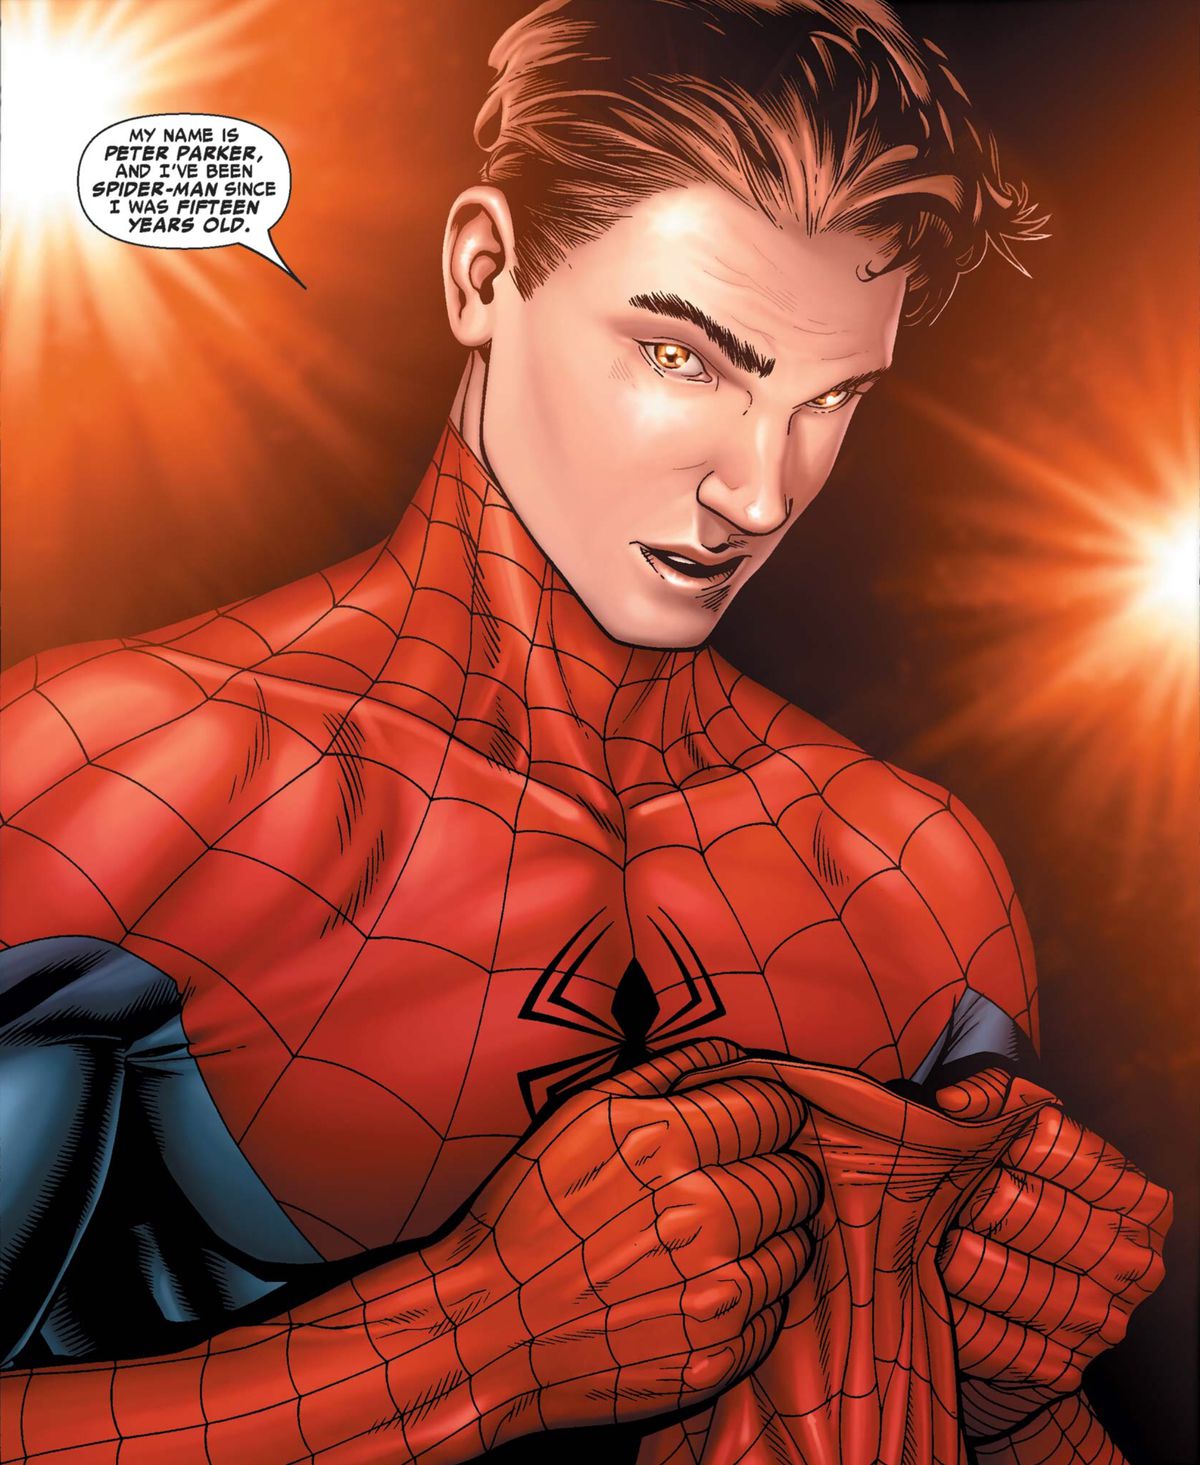 Peter Parker si smaschera di fronte a fotografi lampeggianti, dicendo: 